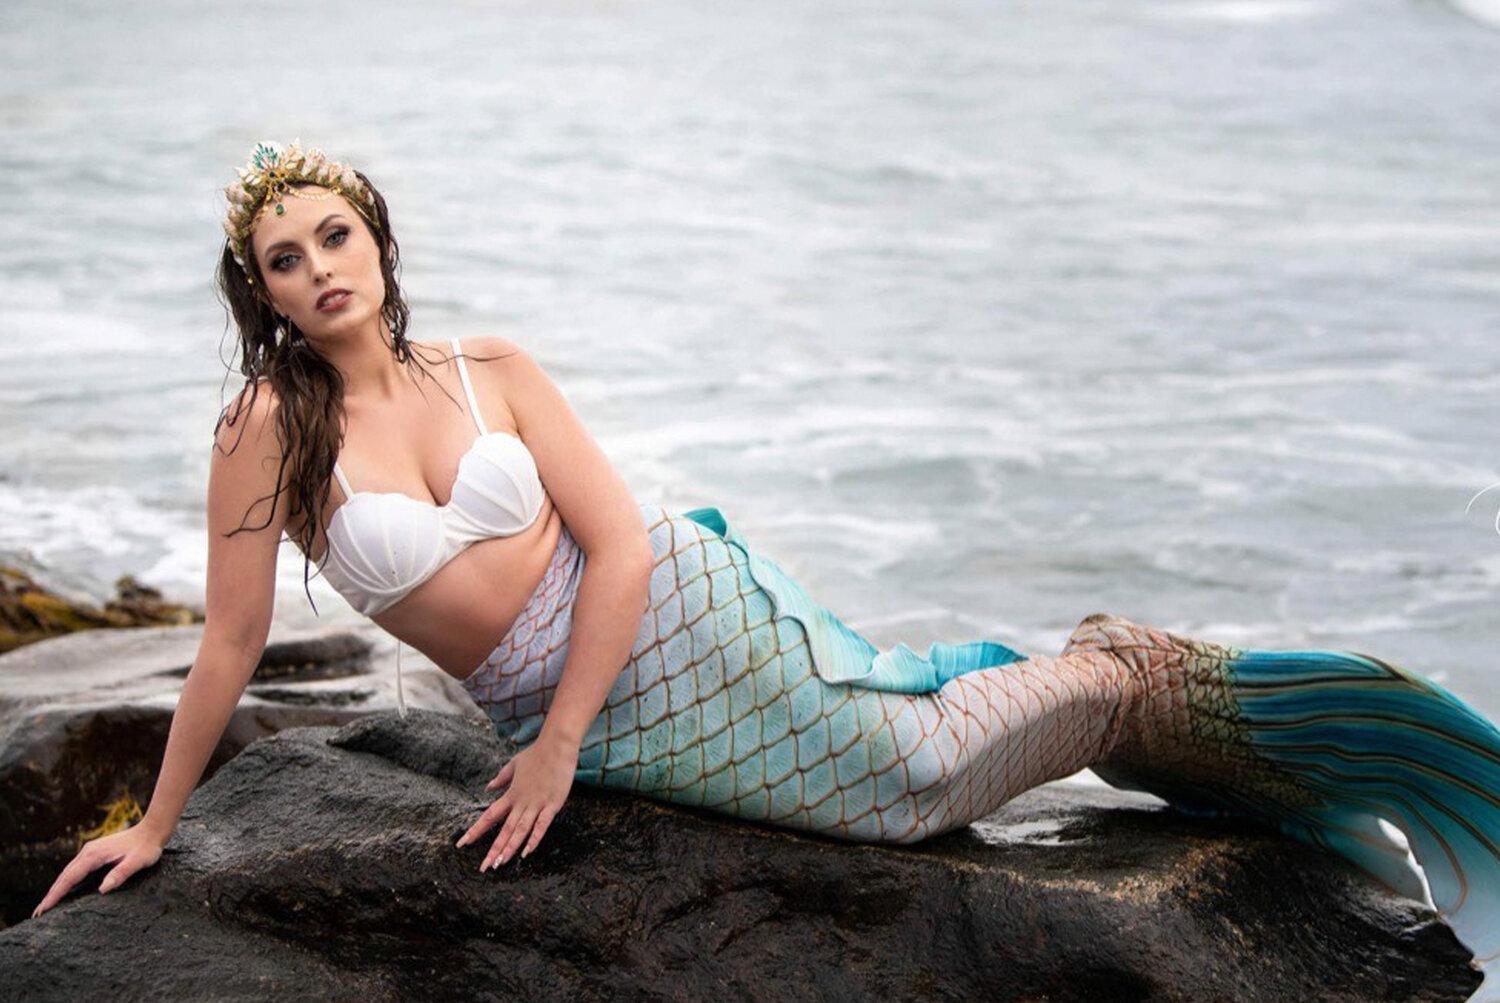 Mermaid Alyssa Wick sunbathing on the rocky coastline